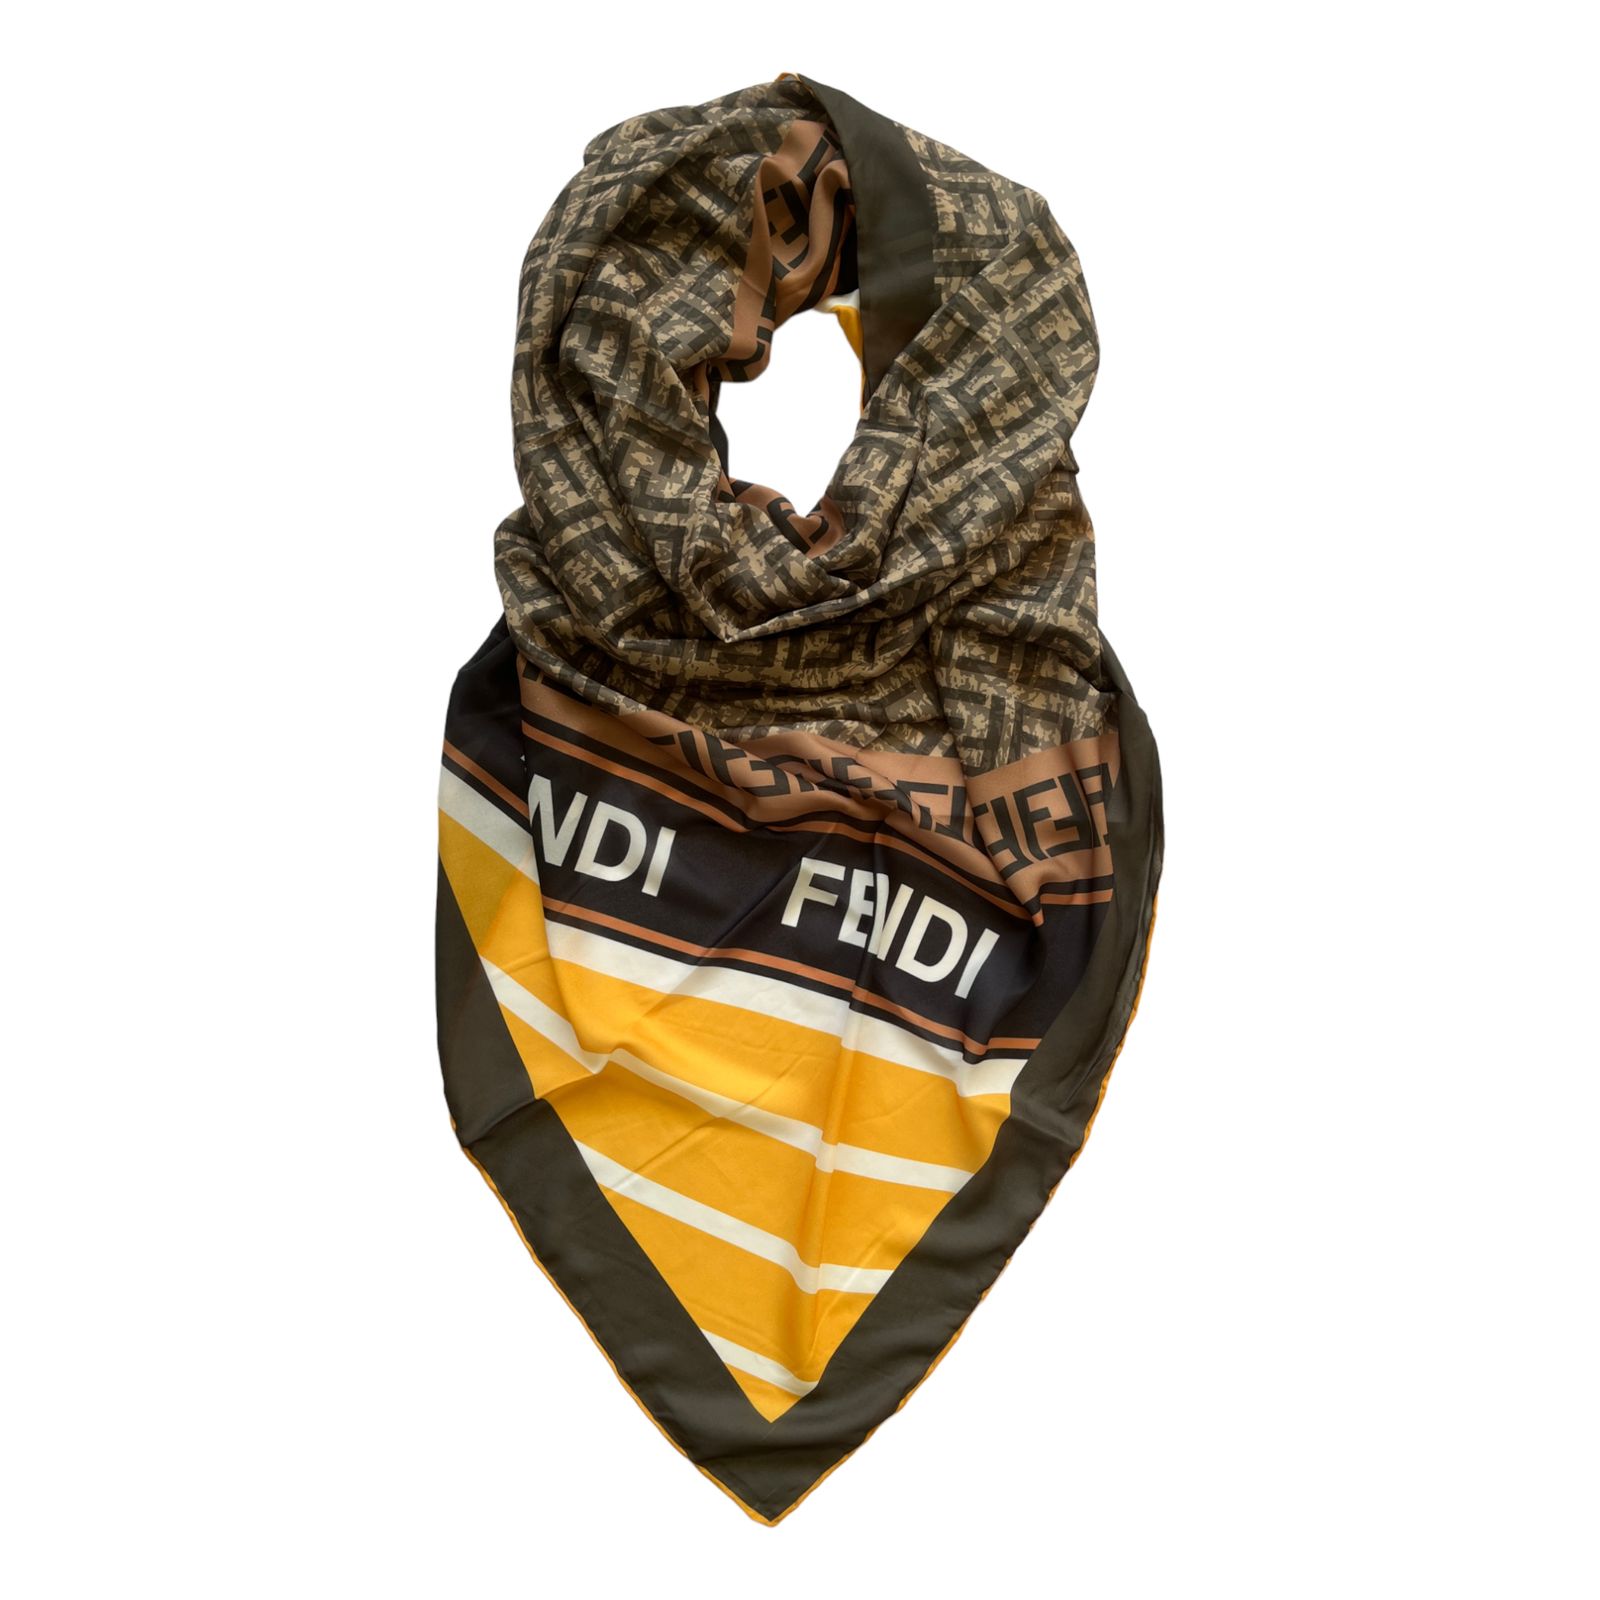 روسری مدل فندی -  - 1